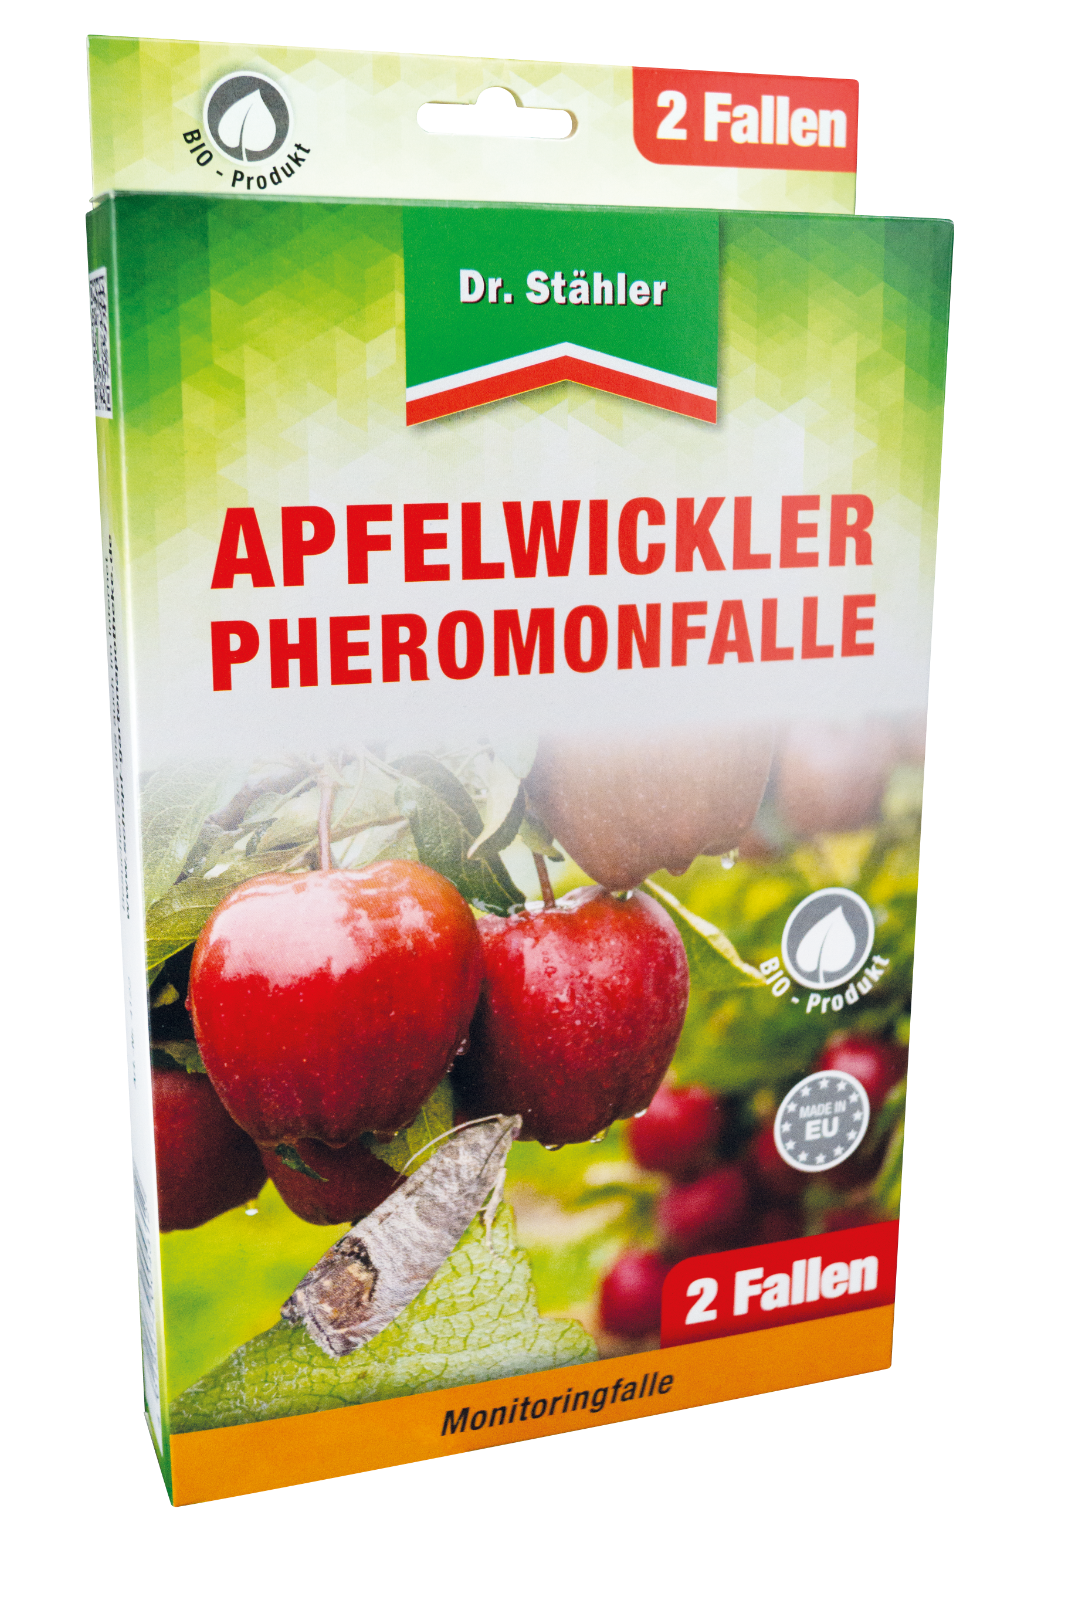 Dr. Stähler Apfelwickler Pheromonfalle 2 Fallen